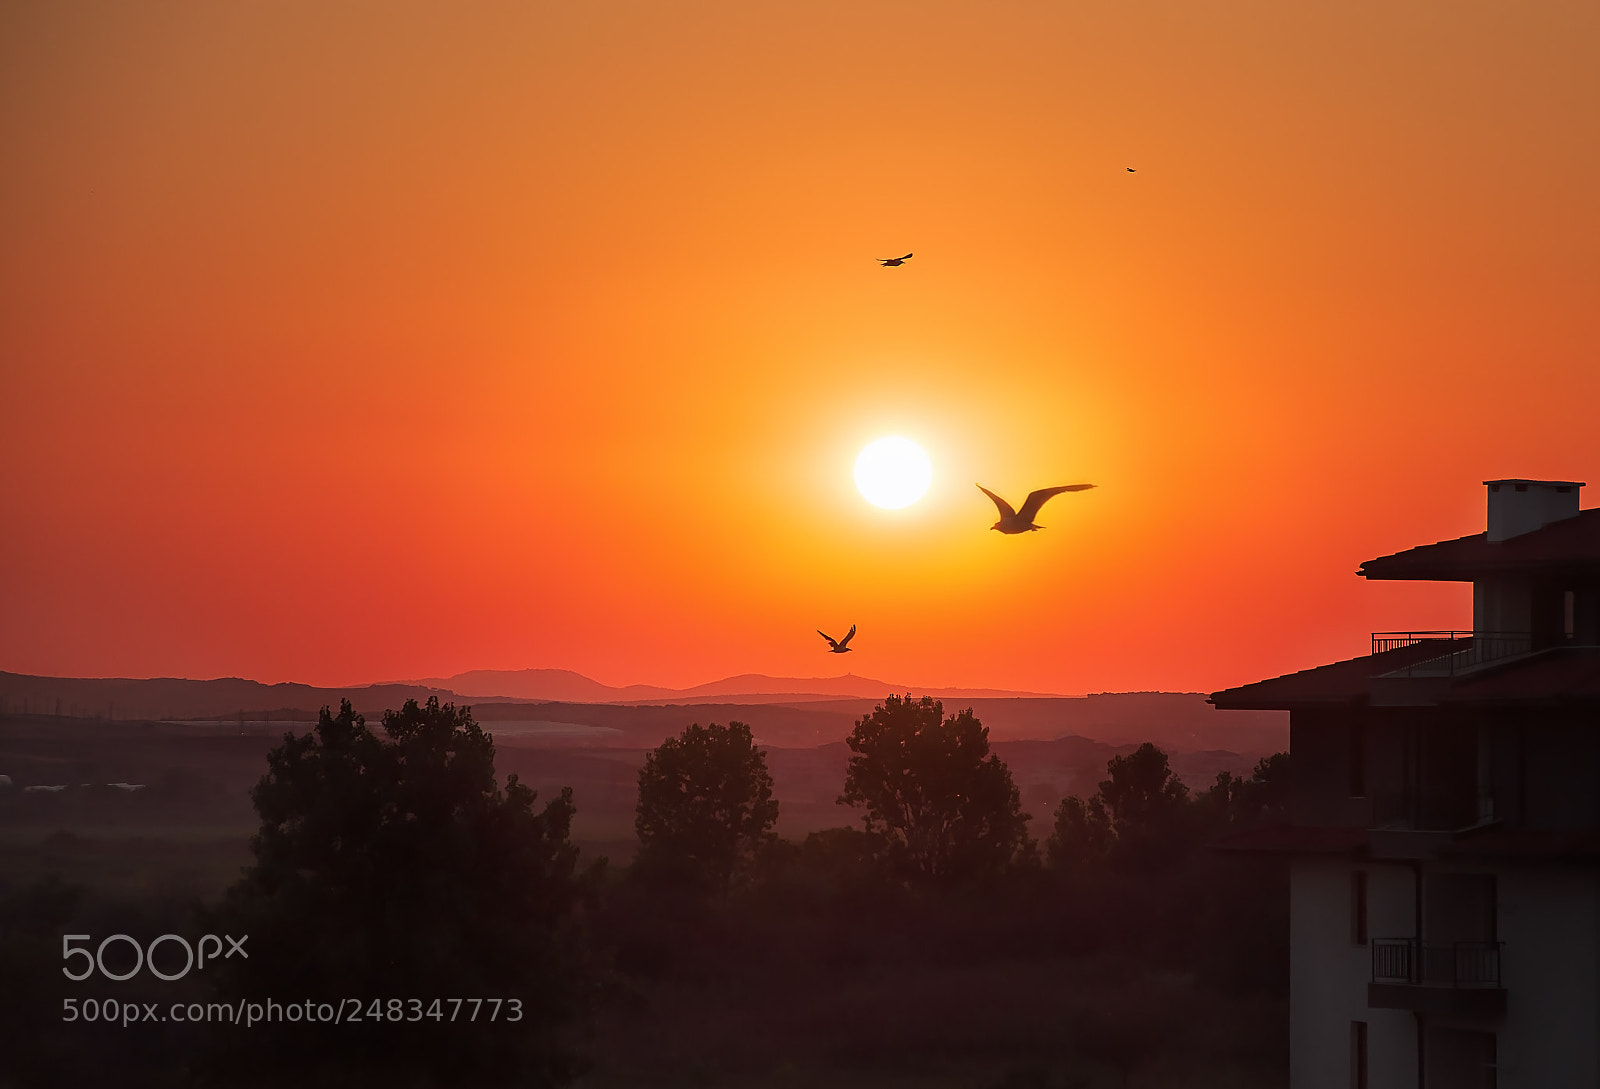 Nikon D90 sample photo. Beautiful sunset with seagulls photography